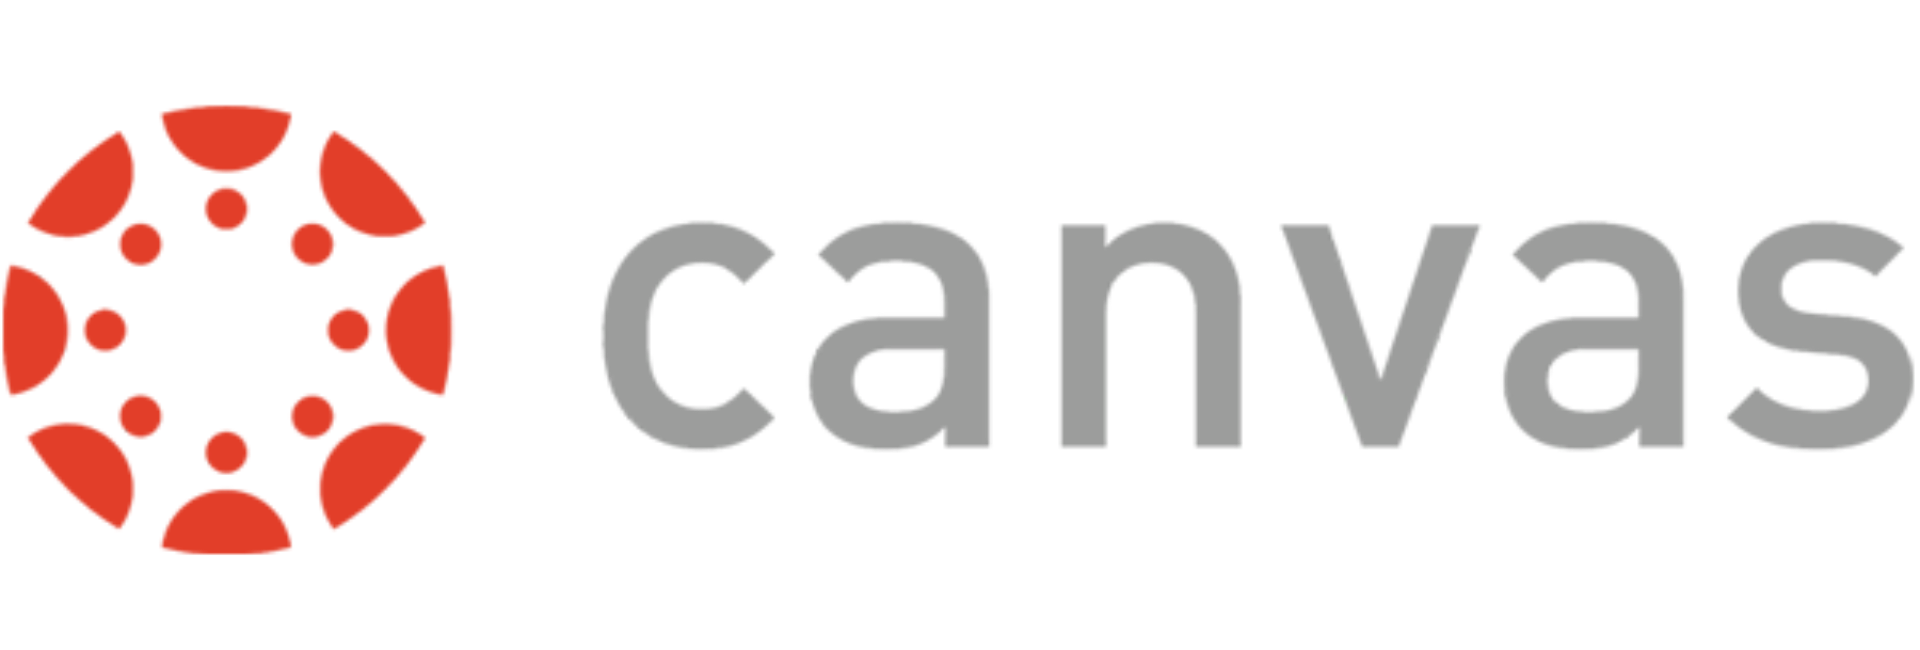 Canvas-logo